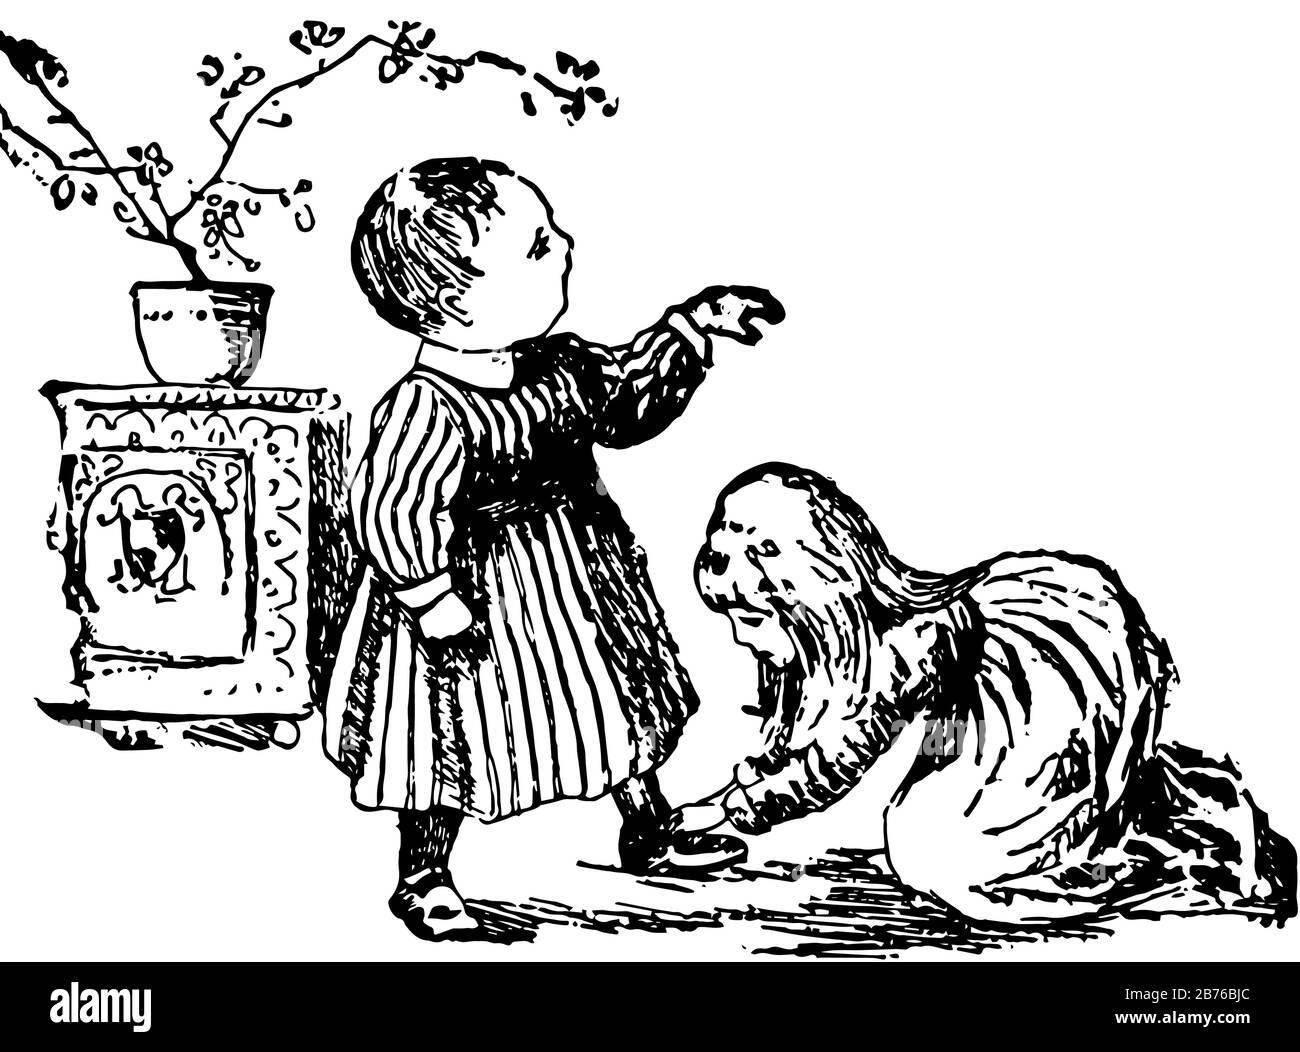 Pépinière Rhyme, cette scène montre une petite fille boucle chaussure d'enfant debout à côté d'elle, plante en pot en arrière-plan, dessin vintage de ligne ou de graveur Illustration de Vecteur